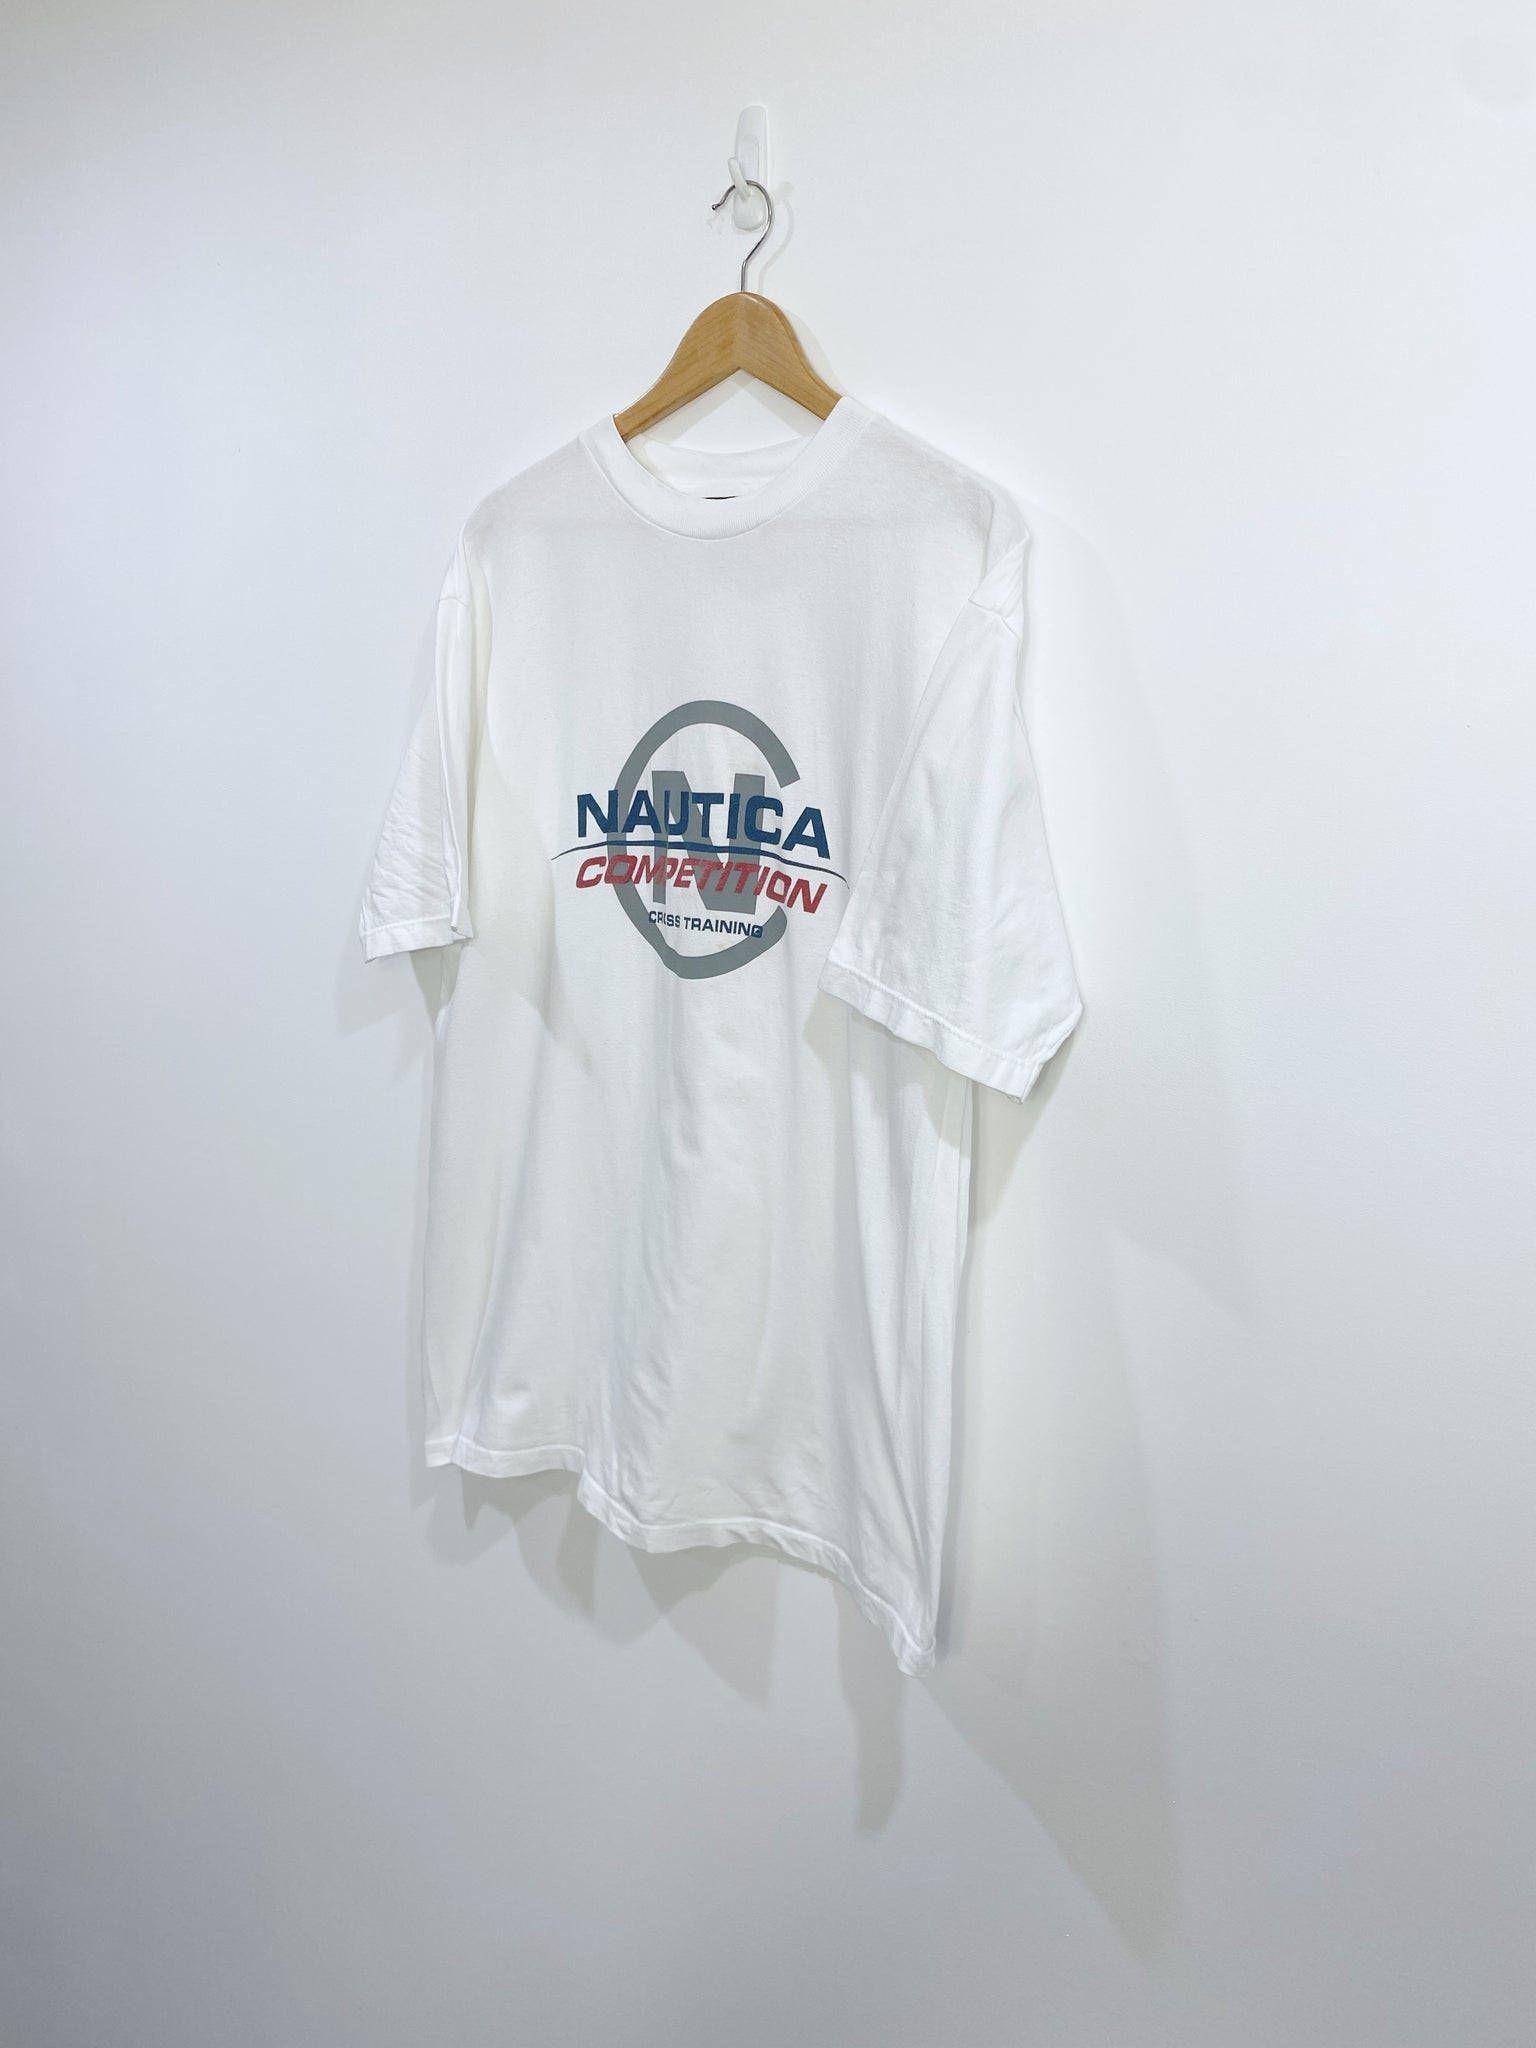 Vintage Nautica Competition T-shirt L